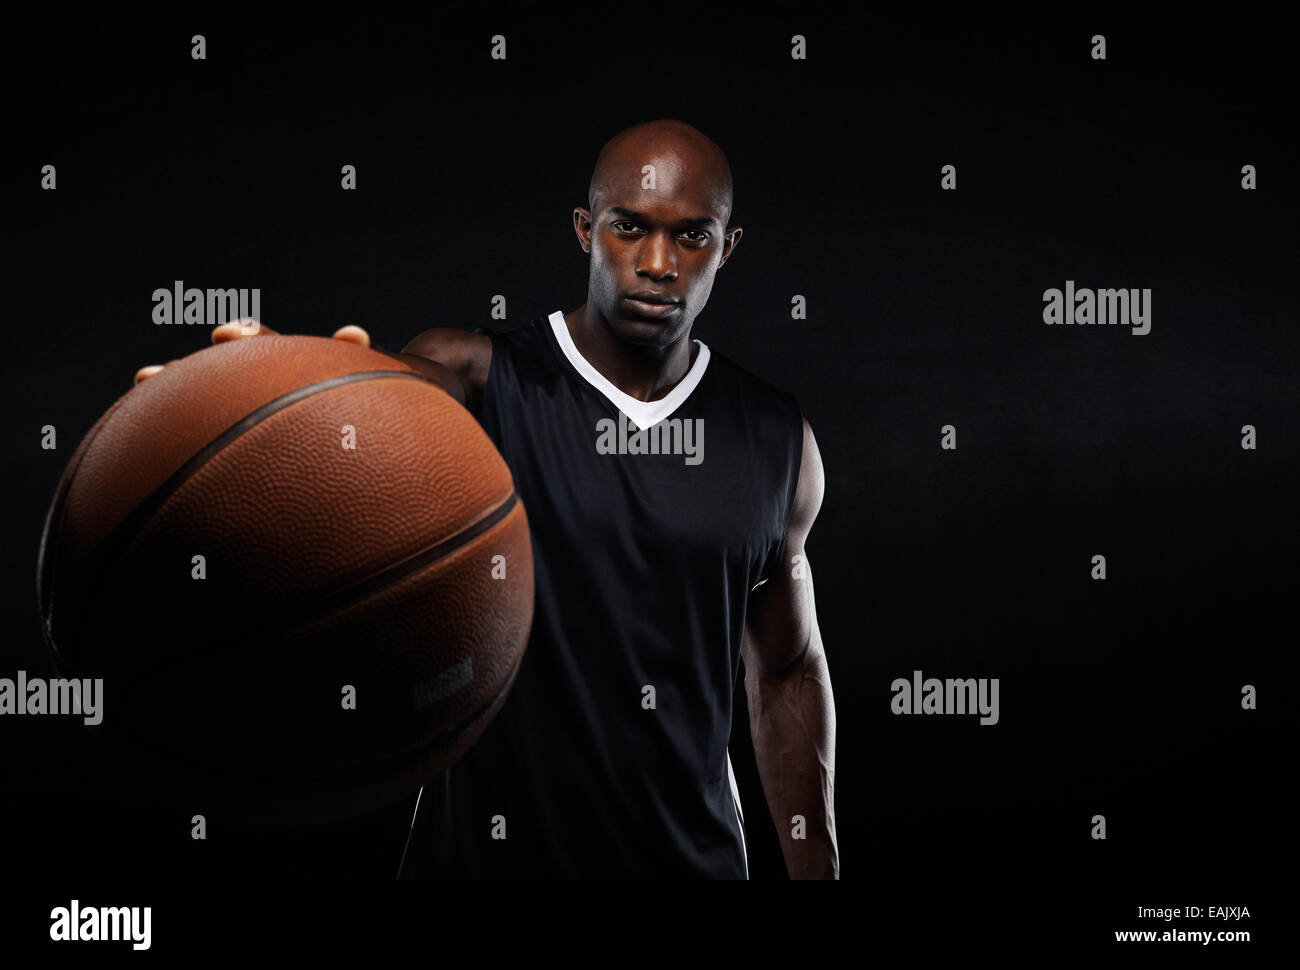 Immagine del giovane americano africano uomo sportive in jersey tenendo un basket. Giocatore di pallacanestro professionale contro il nero. Foto Stock